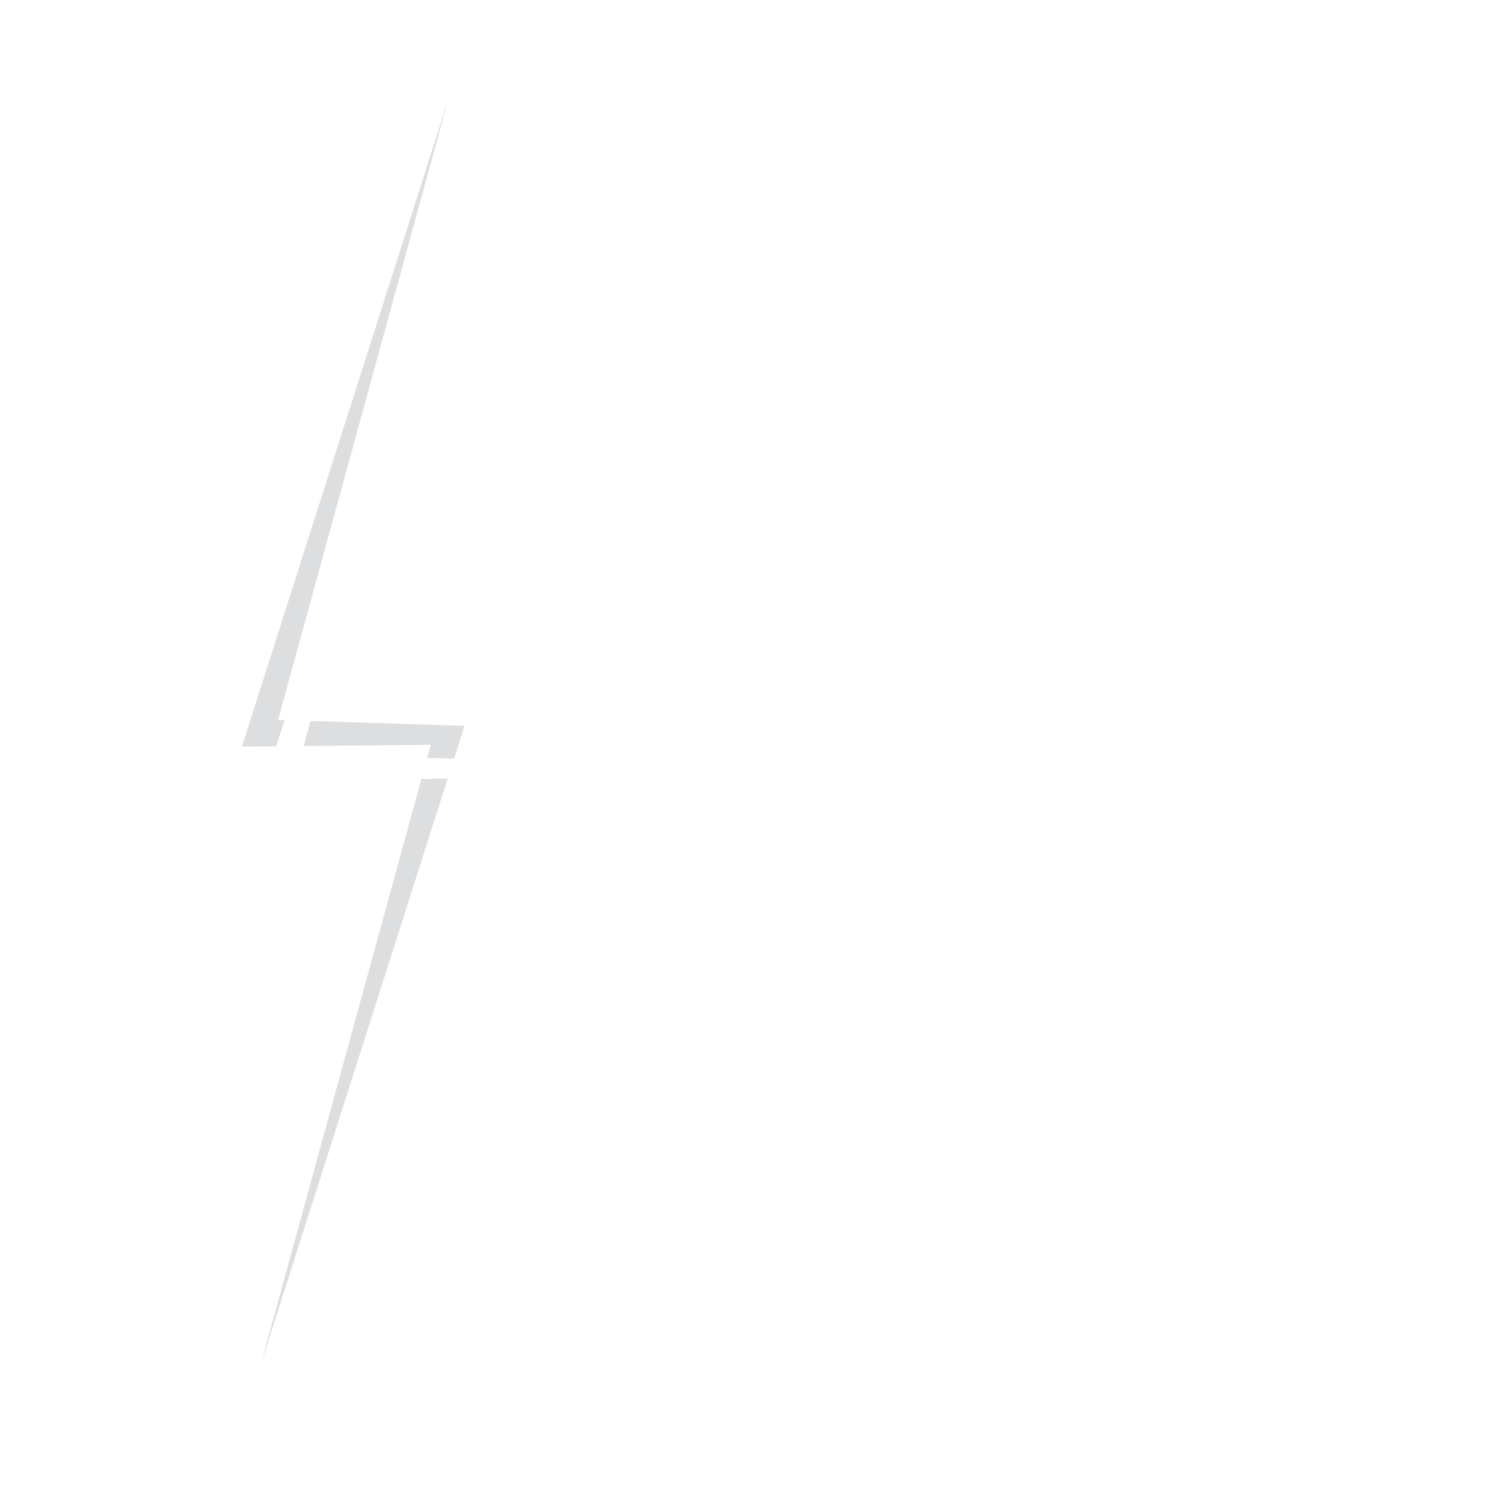 Lisa Kays PLLC